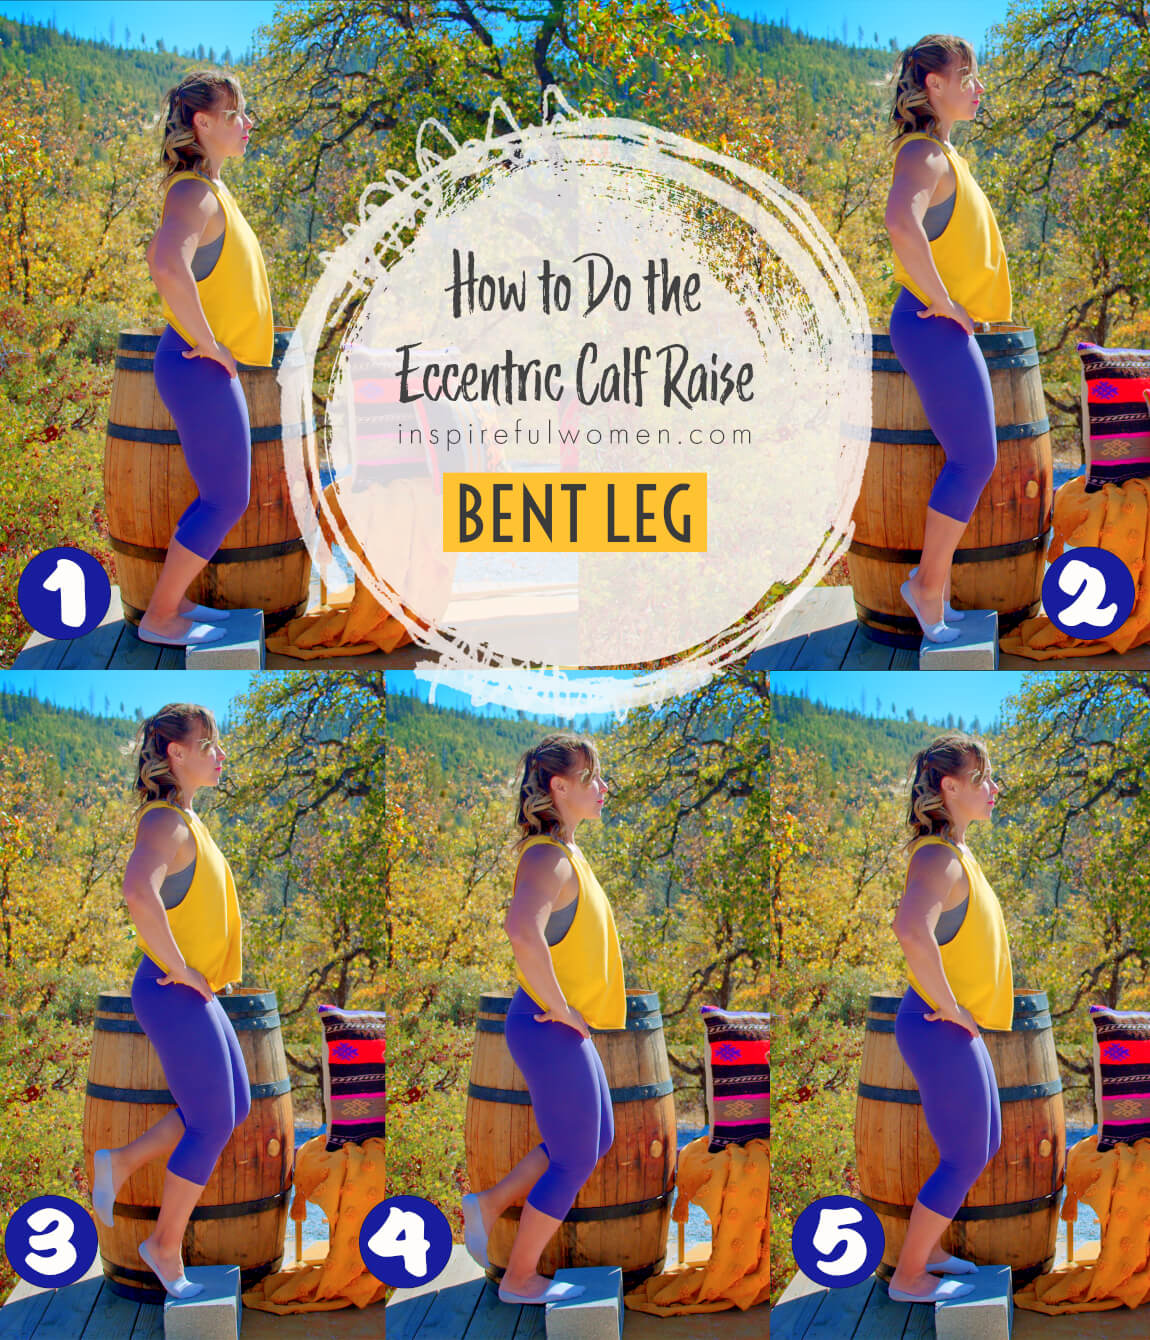 how-to-bent-leg-eccentric-calf-raises-gastrocnemius-soleus-exercise-at-home-women-40-plus